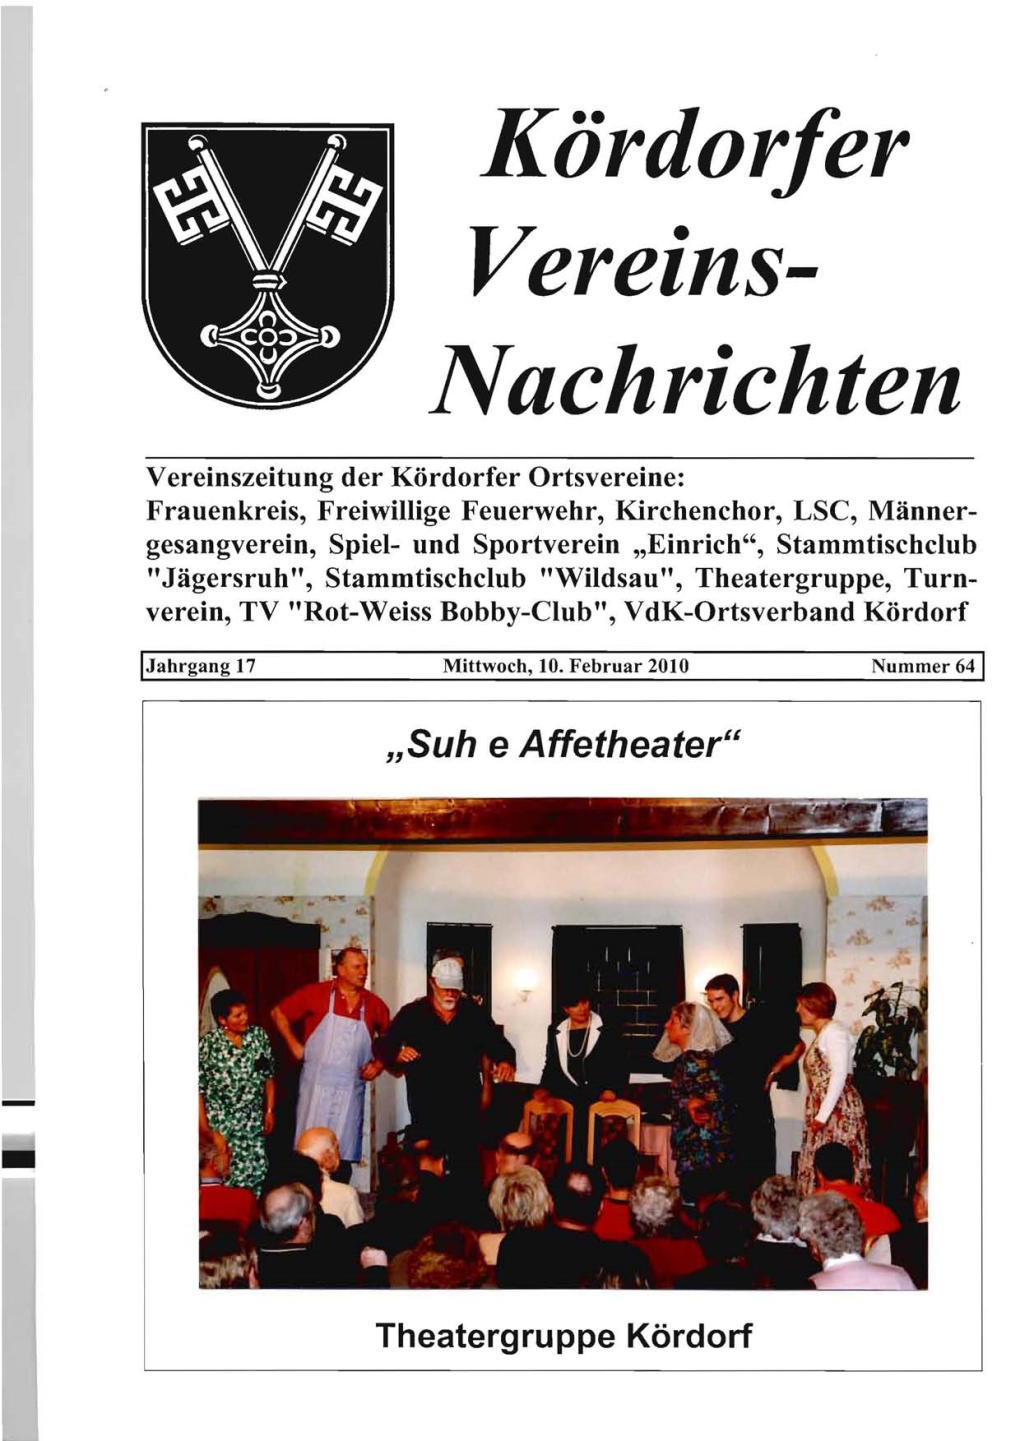 Kördorfer Vereins- Nachrichten